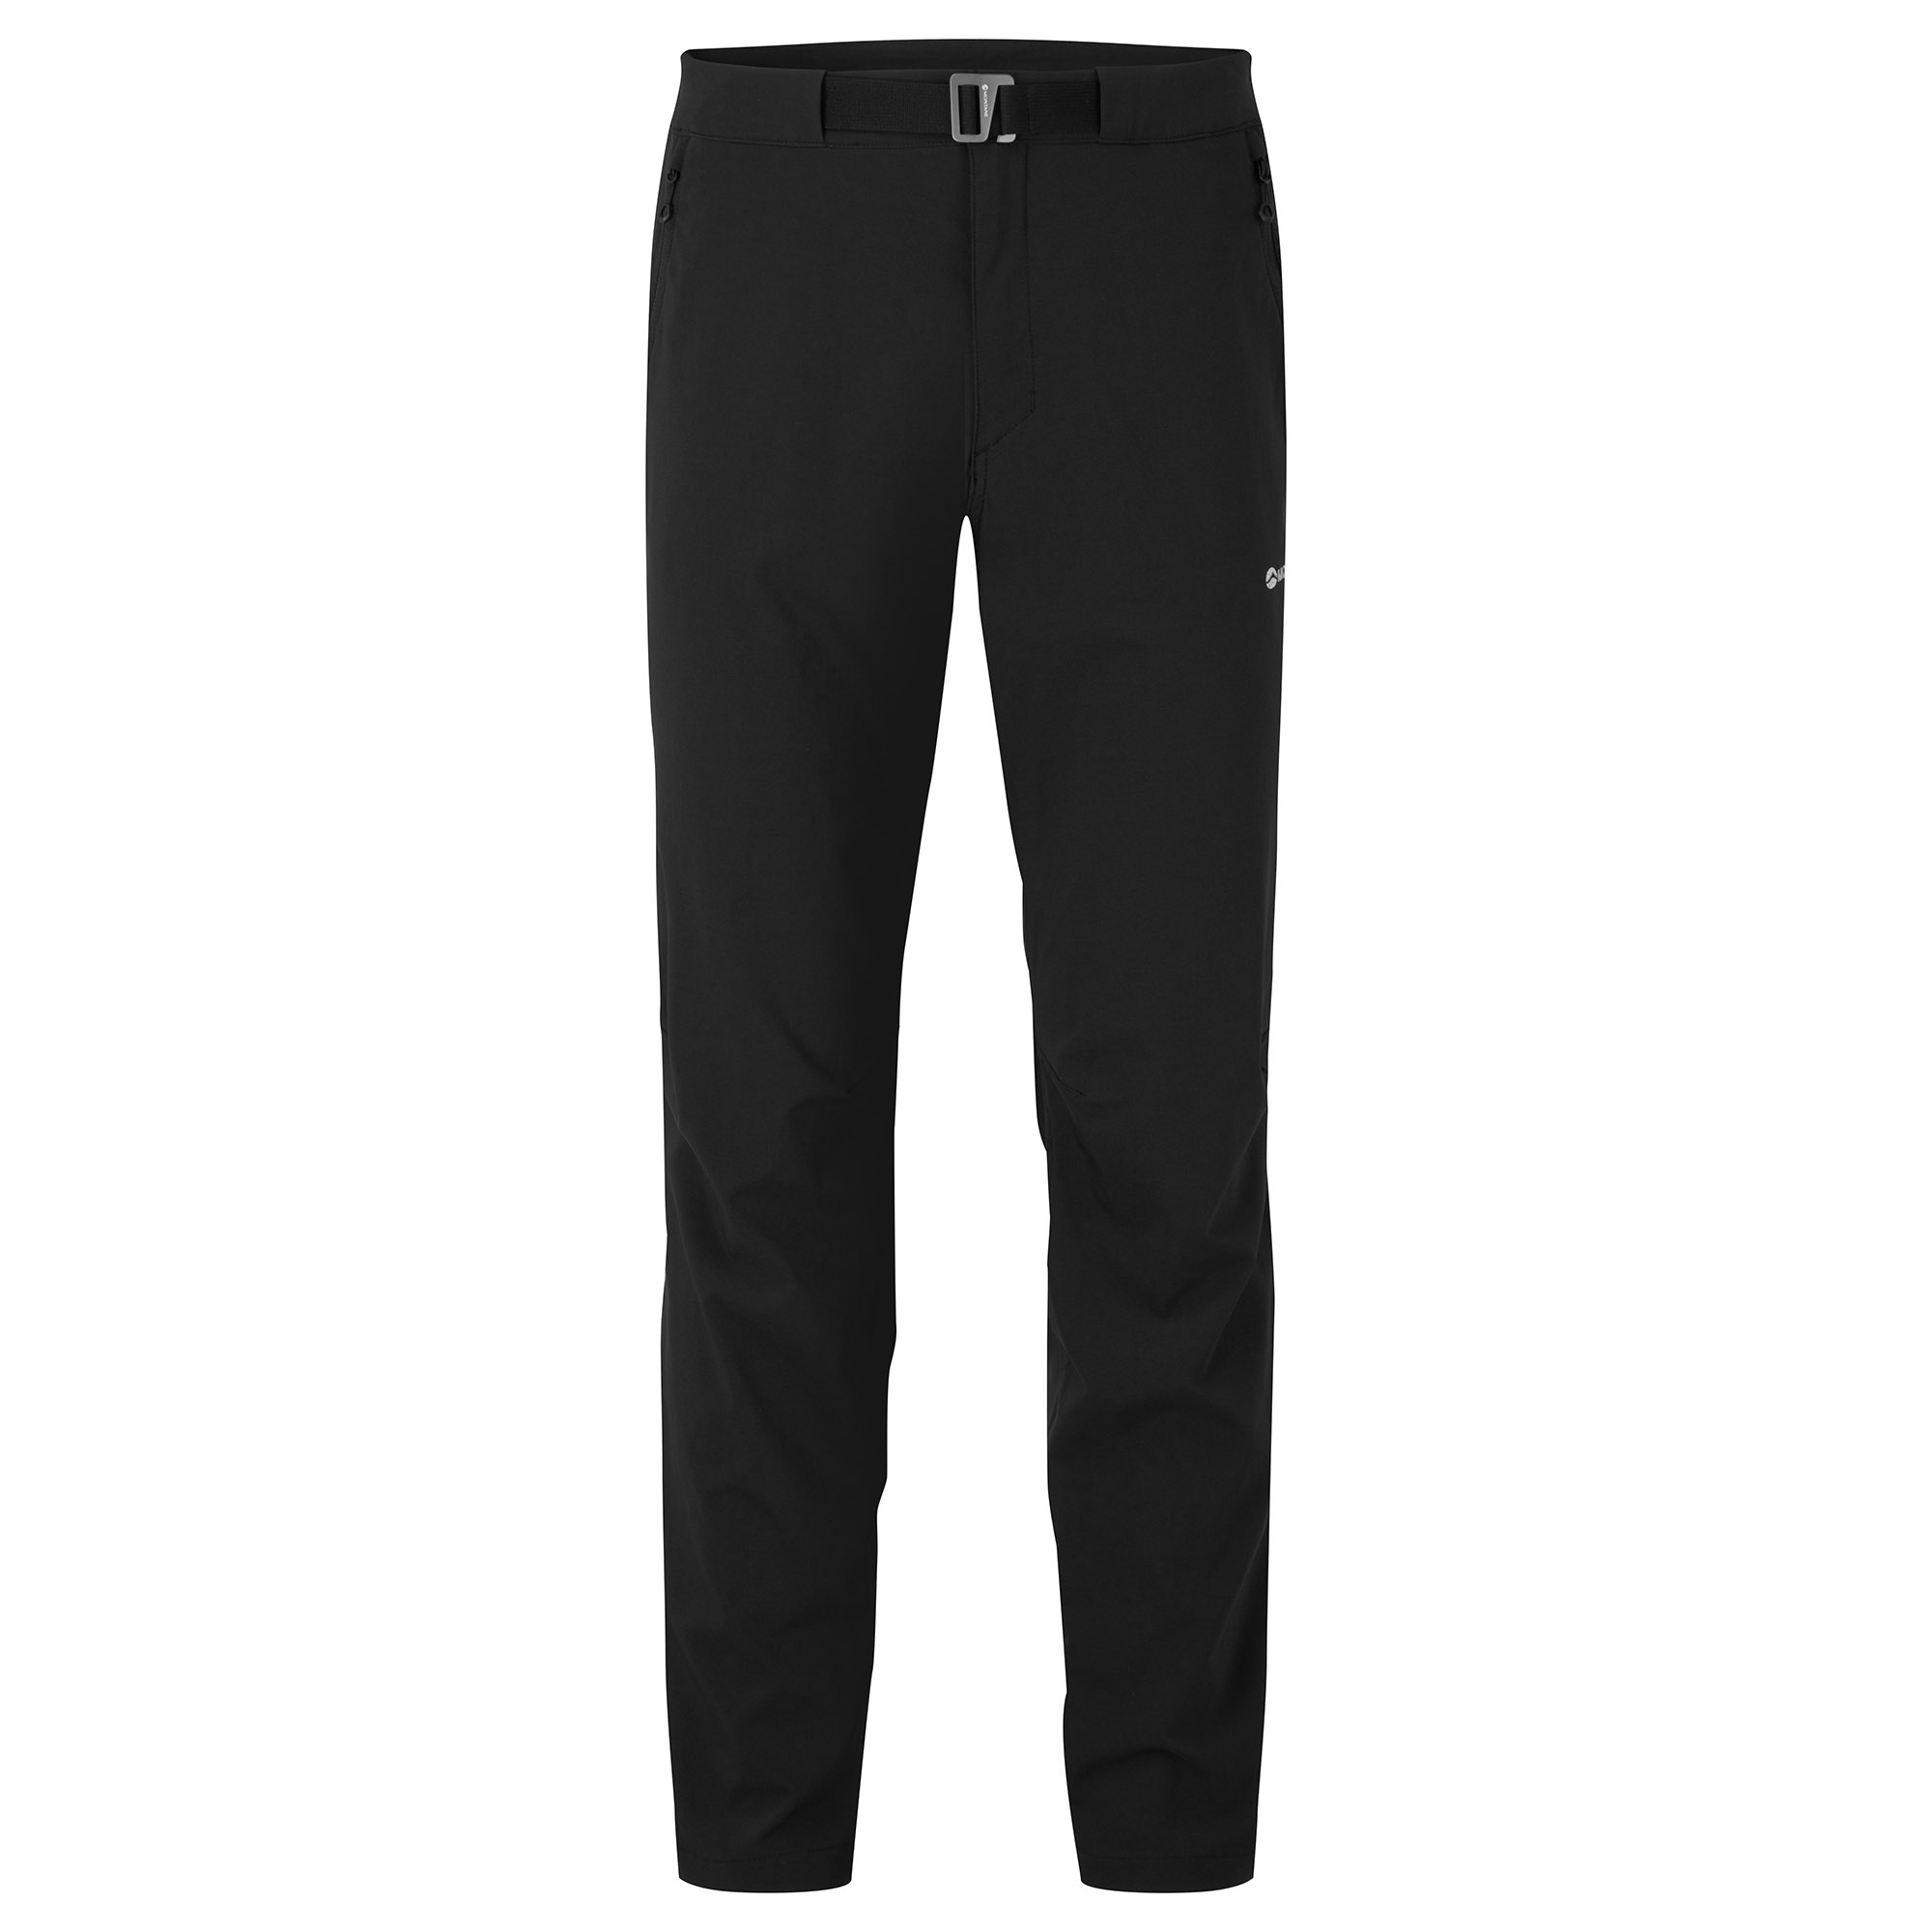 Montane pánské softshellové kalhoty Tenacity Lite Pants - Prodloužené Nohavice Barva: black, Velikost: 34